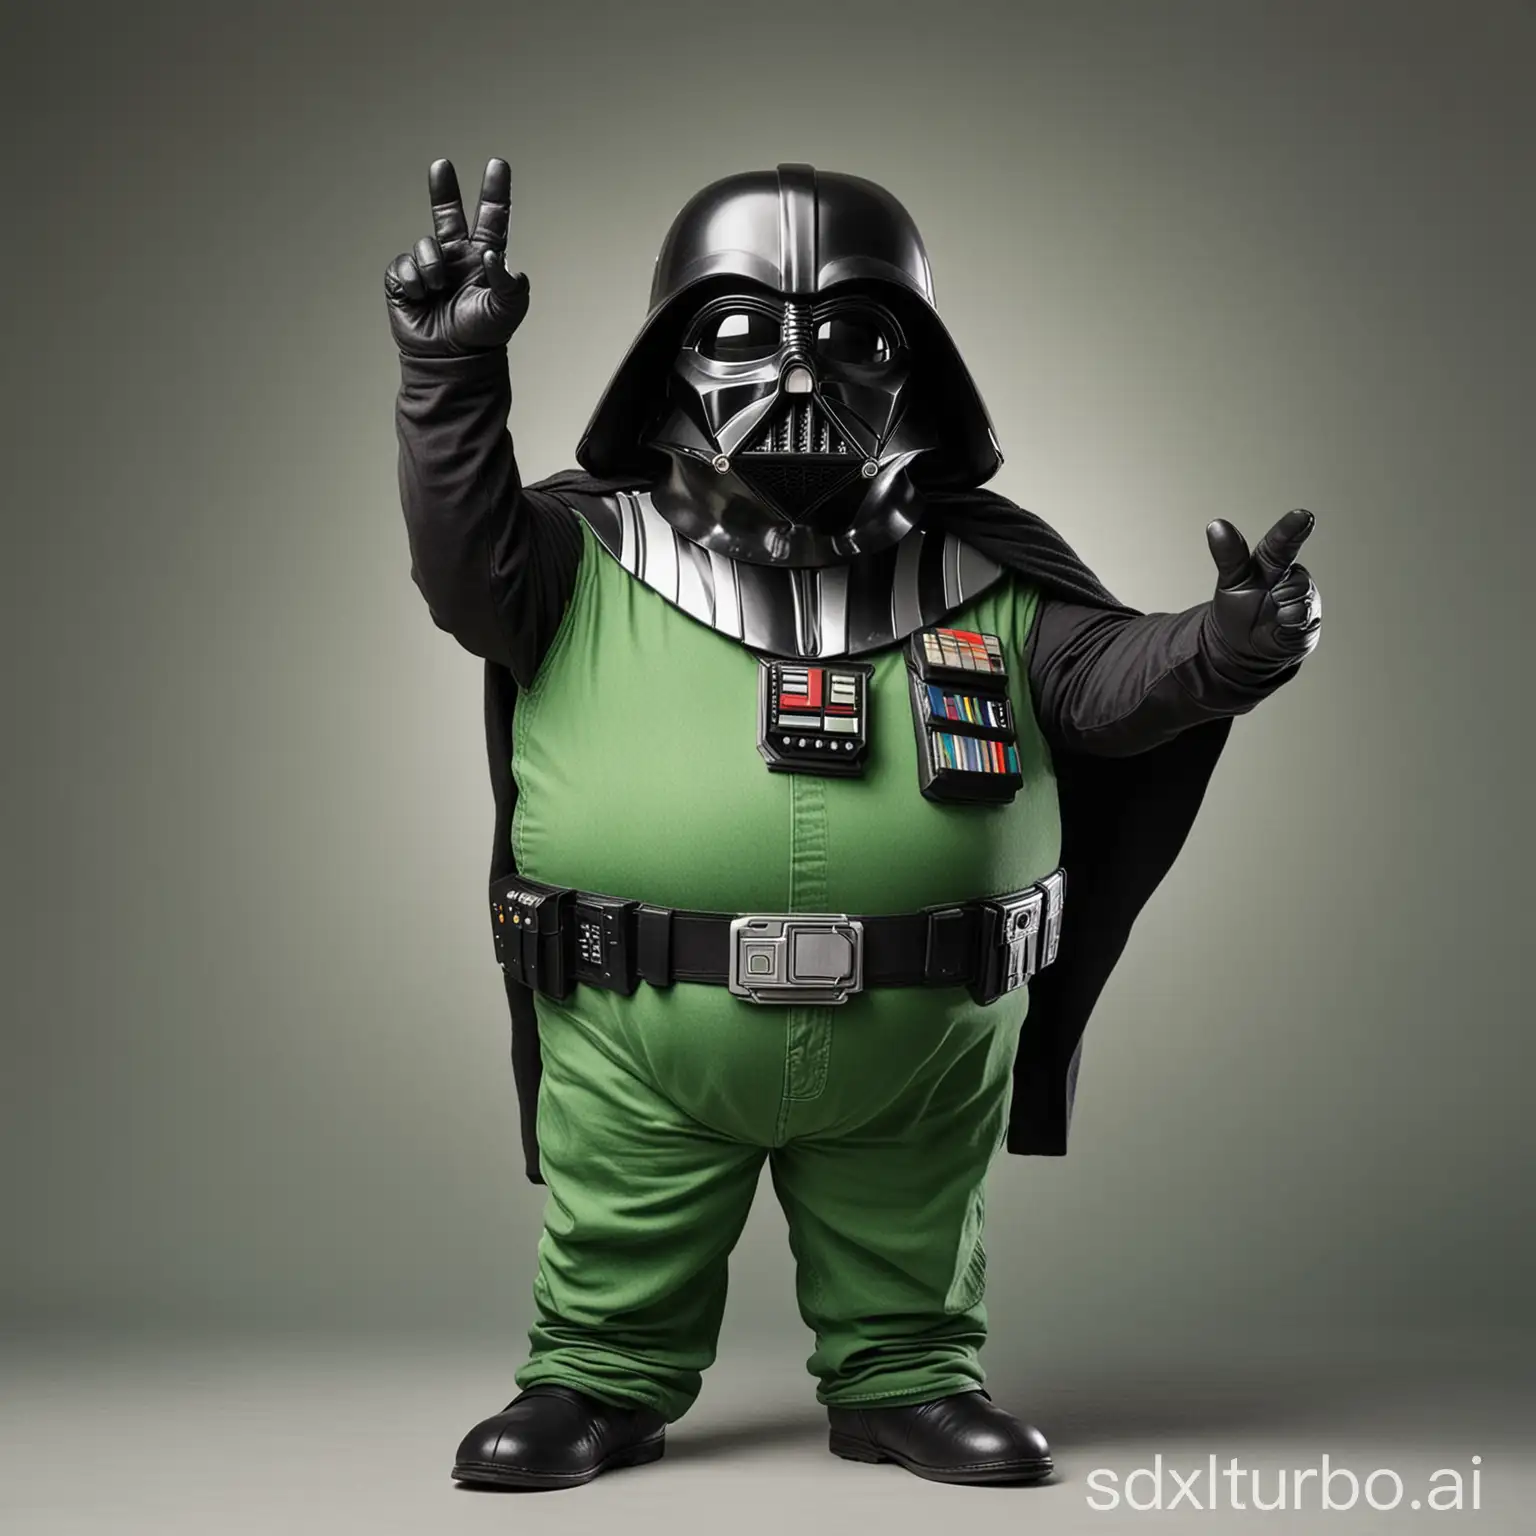 Chubby-Feline-in-Green-Jeans-Making-Vulcan-Gesture-with-Darth-Vader-Helmet